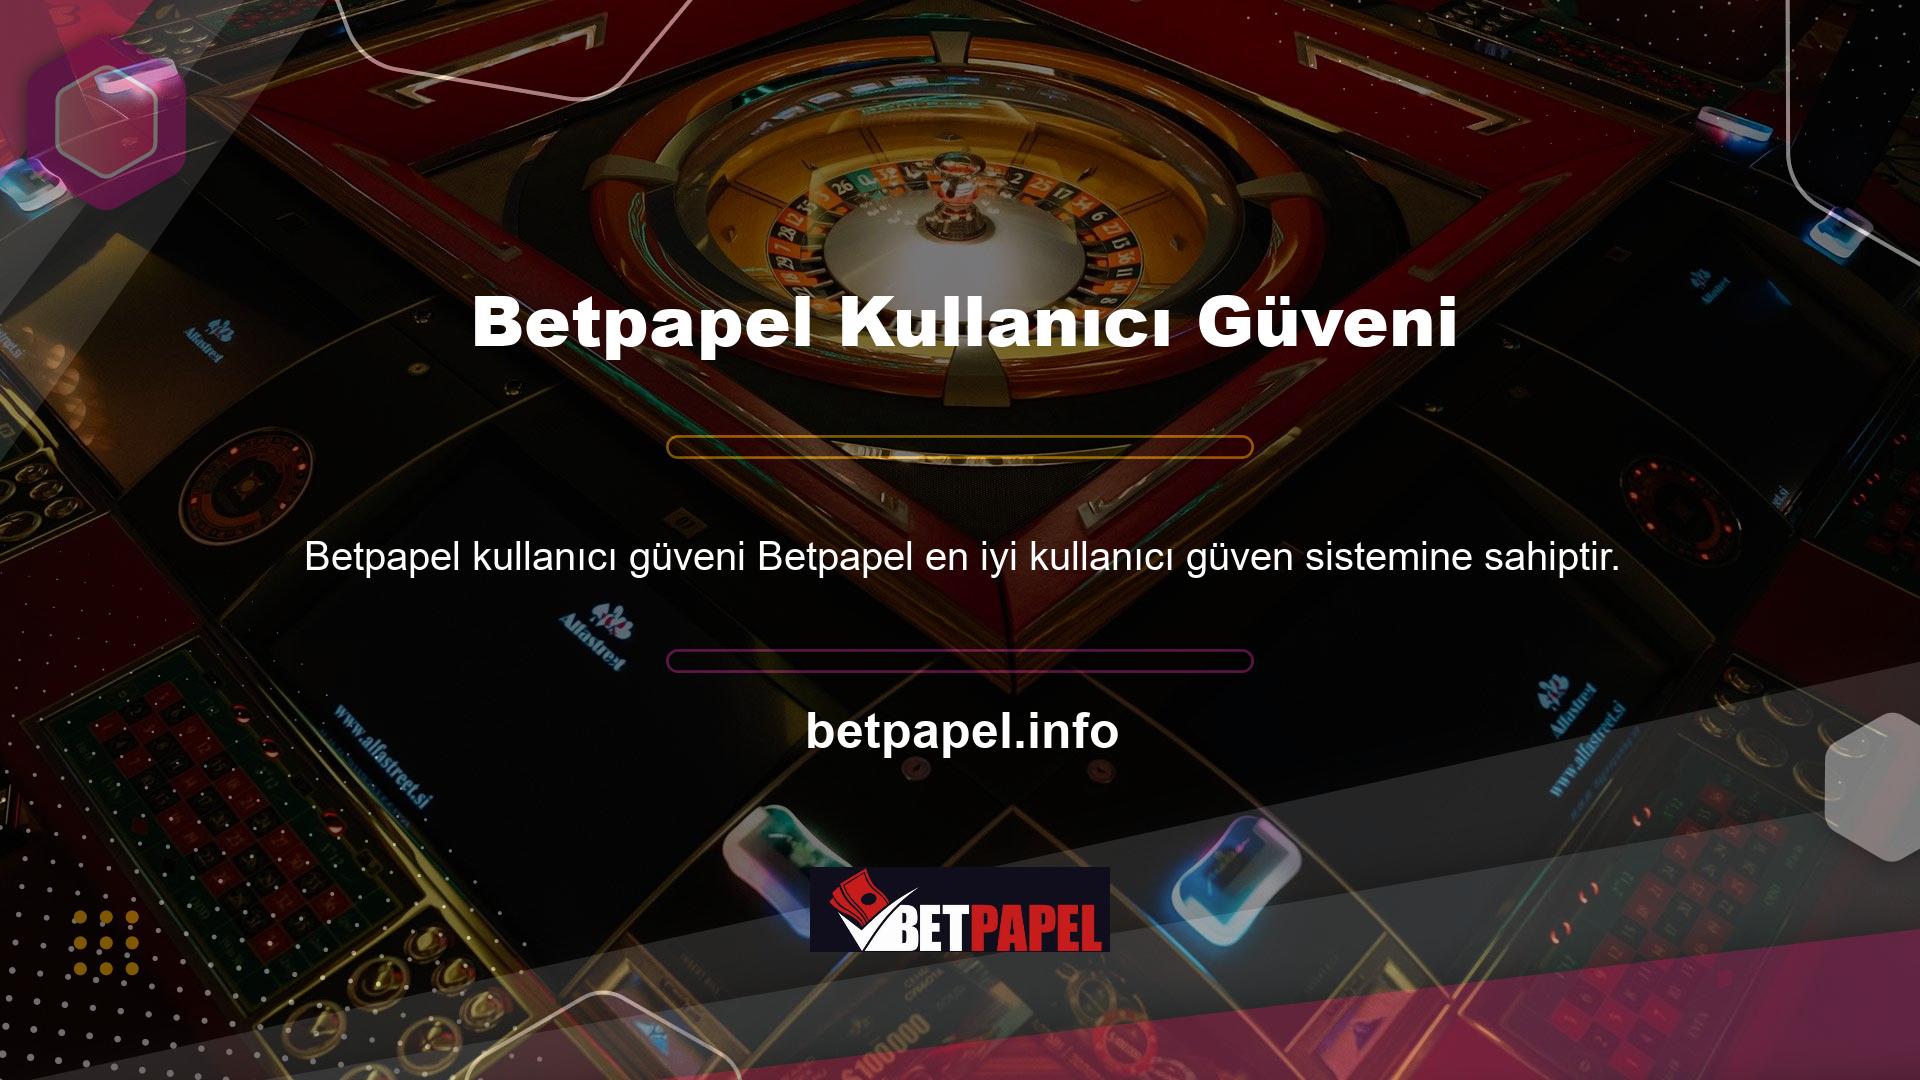 Bu amaçla Betpapel web sitesi düzenli olarak güncellenmekte ve istenmeyen programlardan korunmaktadır